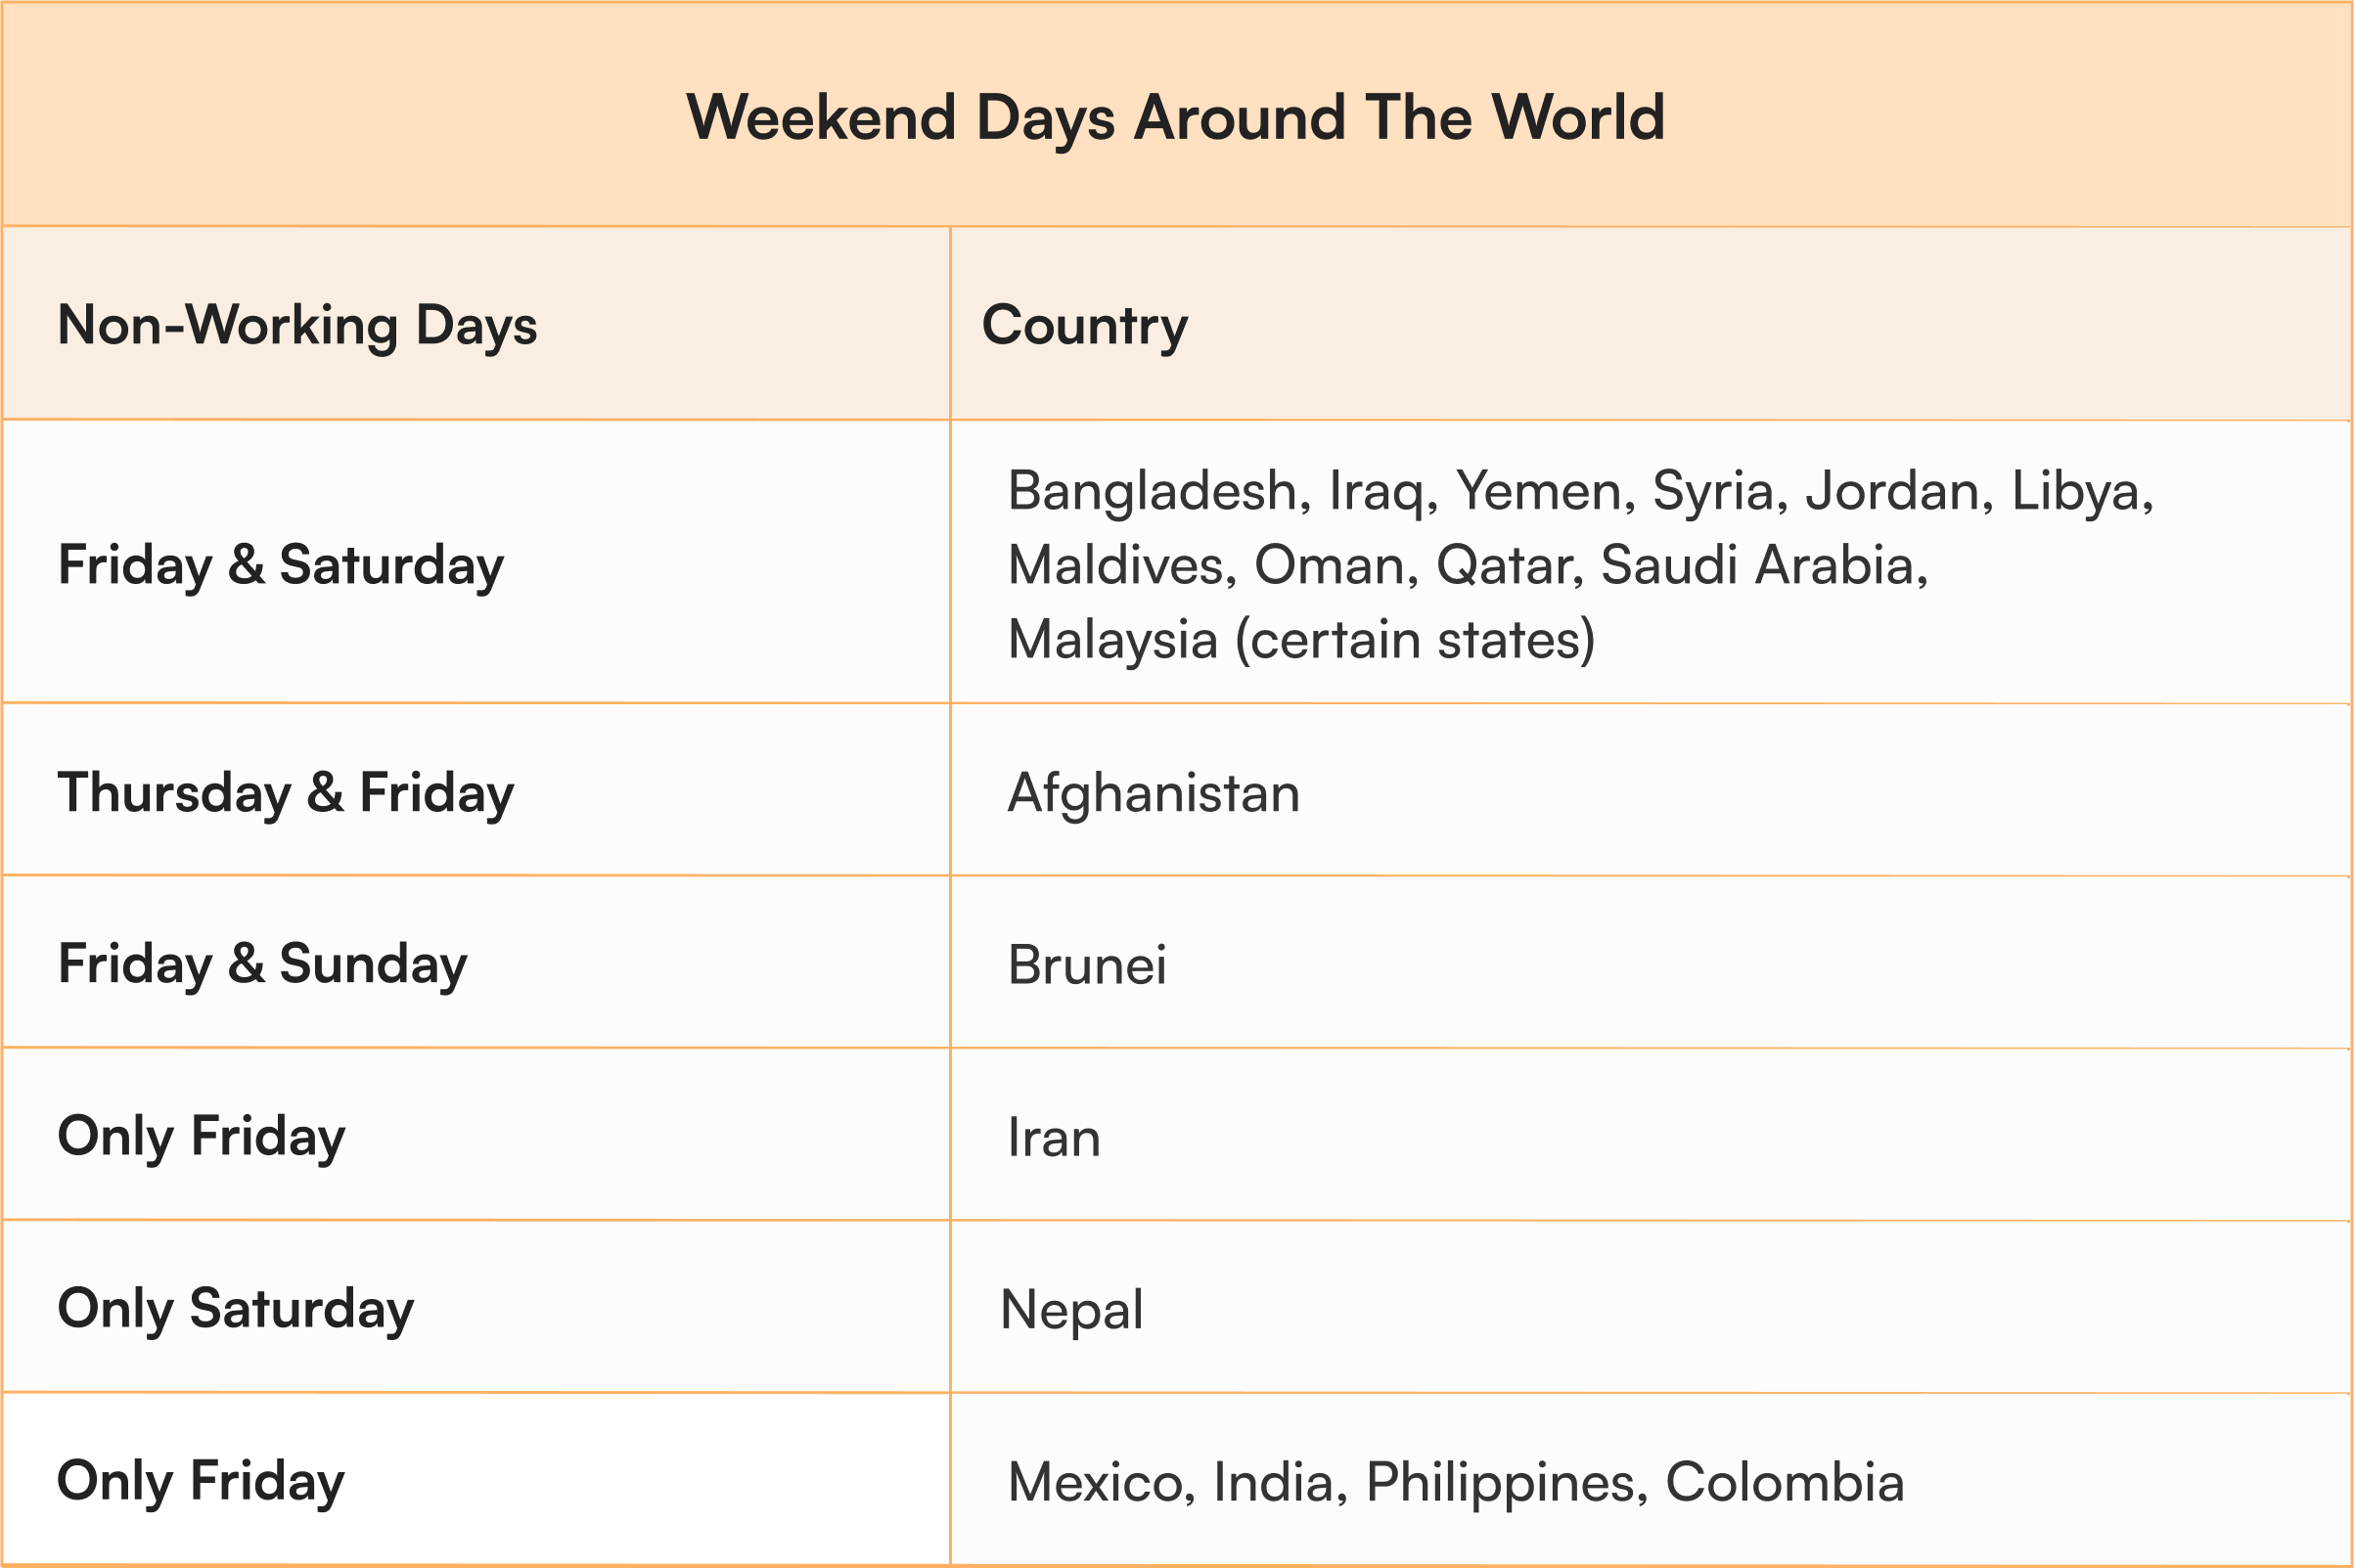 Weekend Days around the world